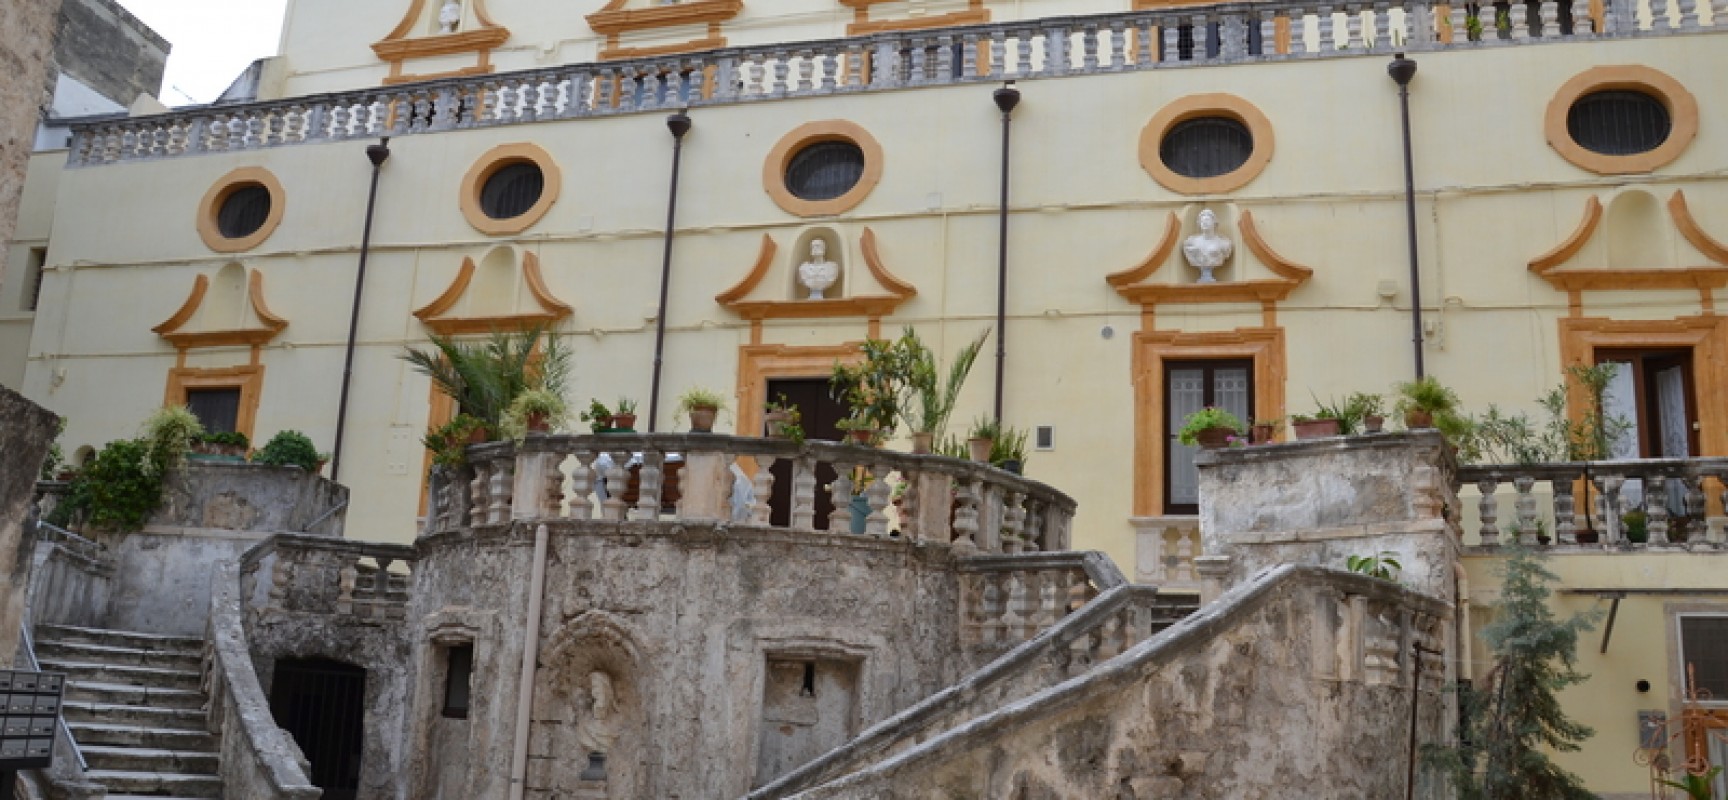 Villa Fiori, BVE con Puglia Scoperta: “Comune sia coraggioso e coerente”